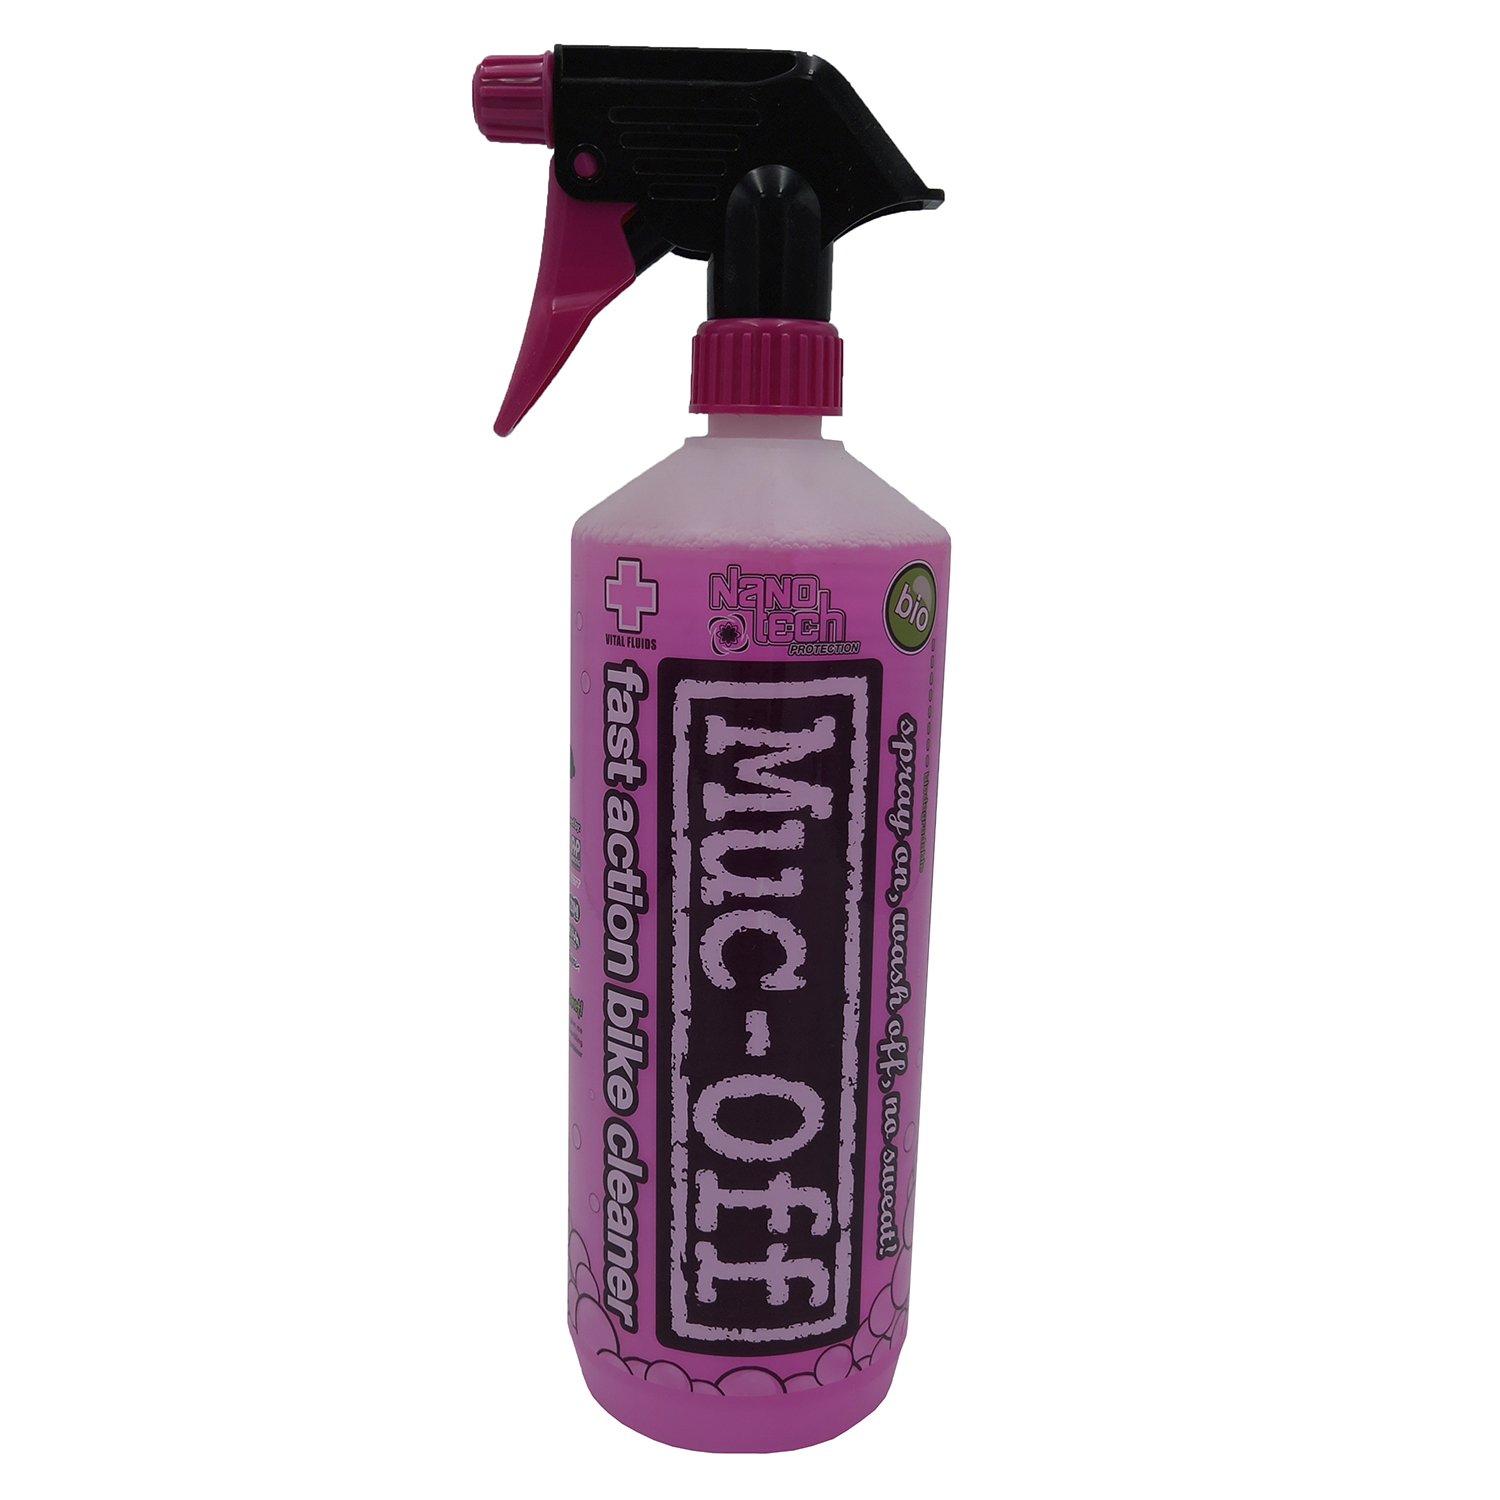 Очиститель MUC-OFF 2015 NANO-TECH BIKE CLEANER, универсальный, 1л, 904 очиститель muc off bike cleaner concentrate универсальный 1 l 347